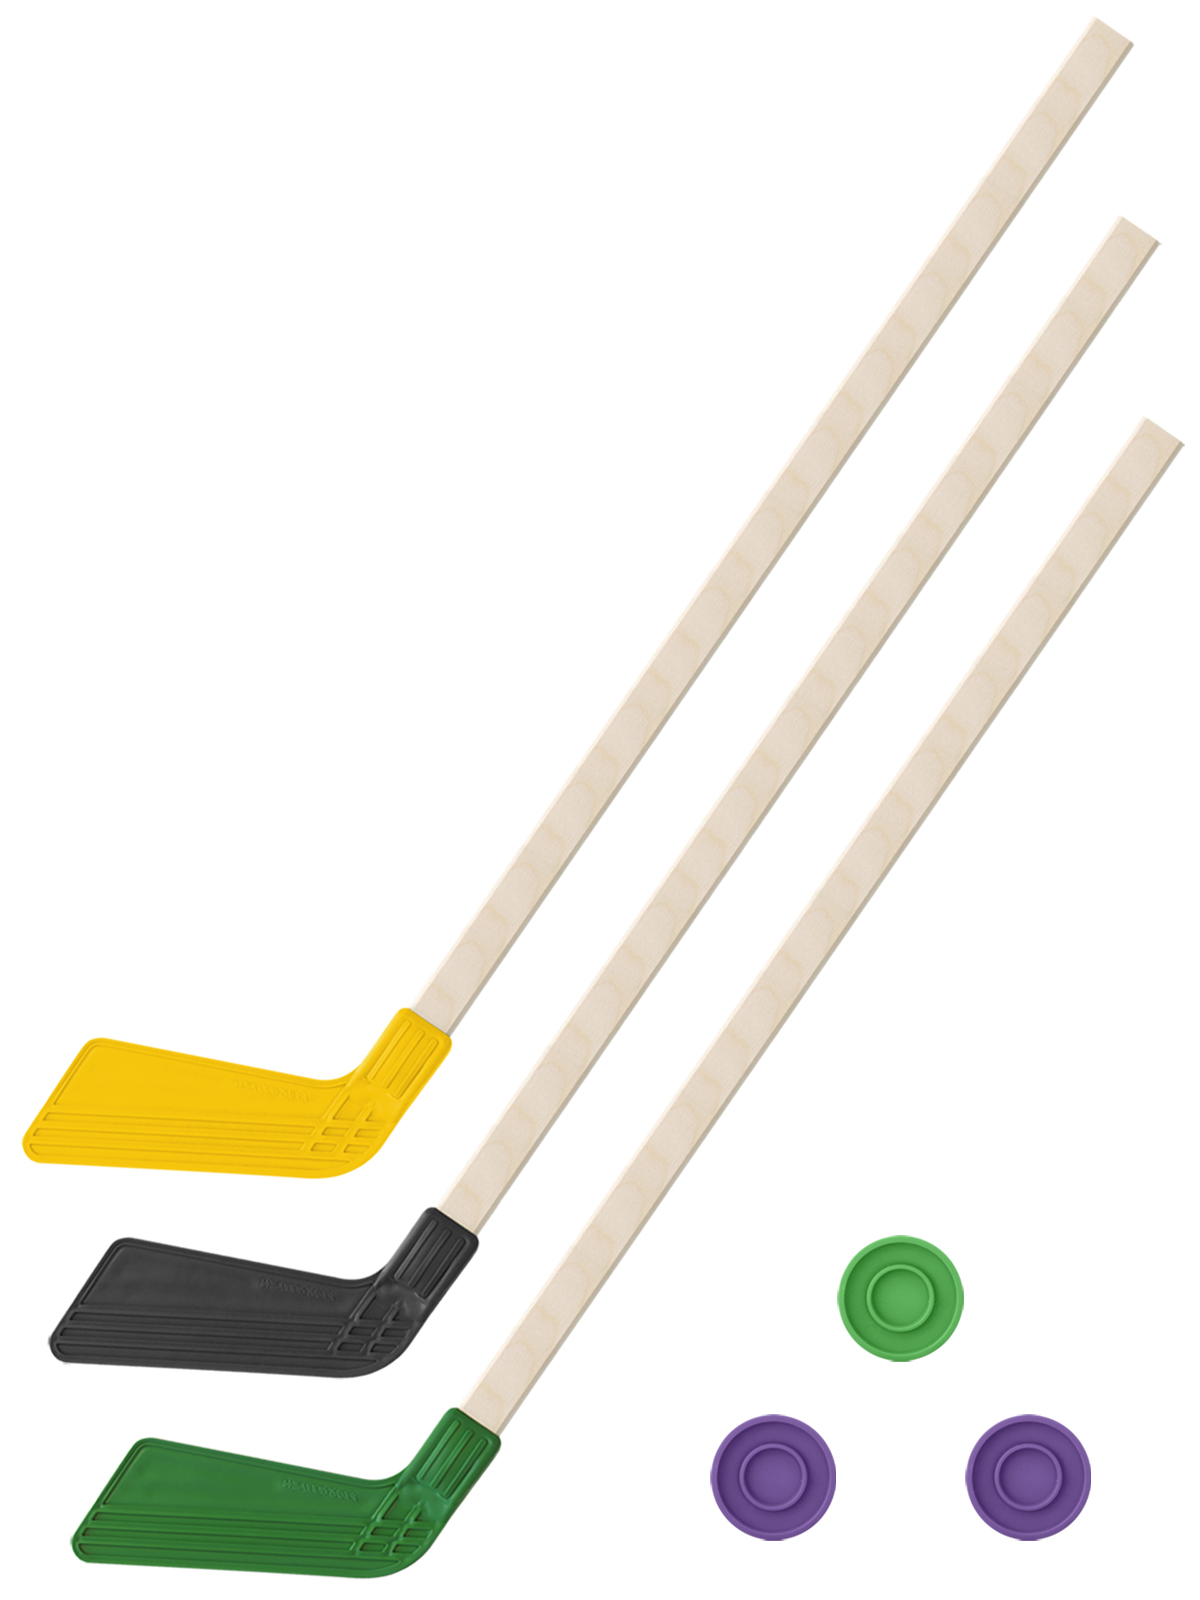 Детский хоккейный набор Задира-плюс 3 в 1 Клюшка хоккейная 80см (жел,черн,зел) + 3 шайбы